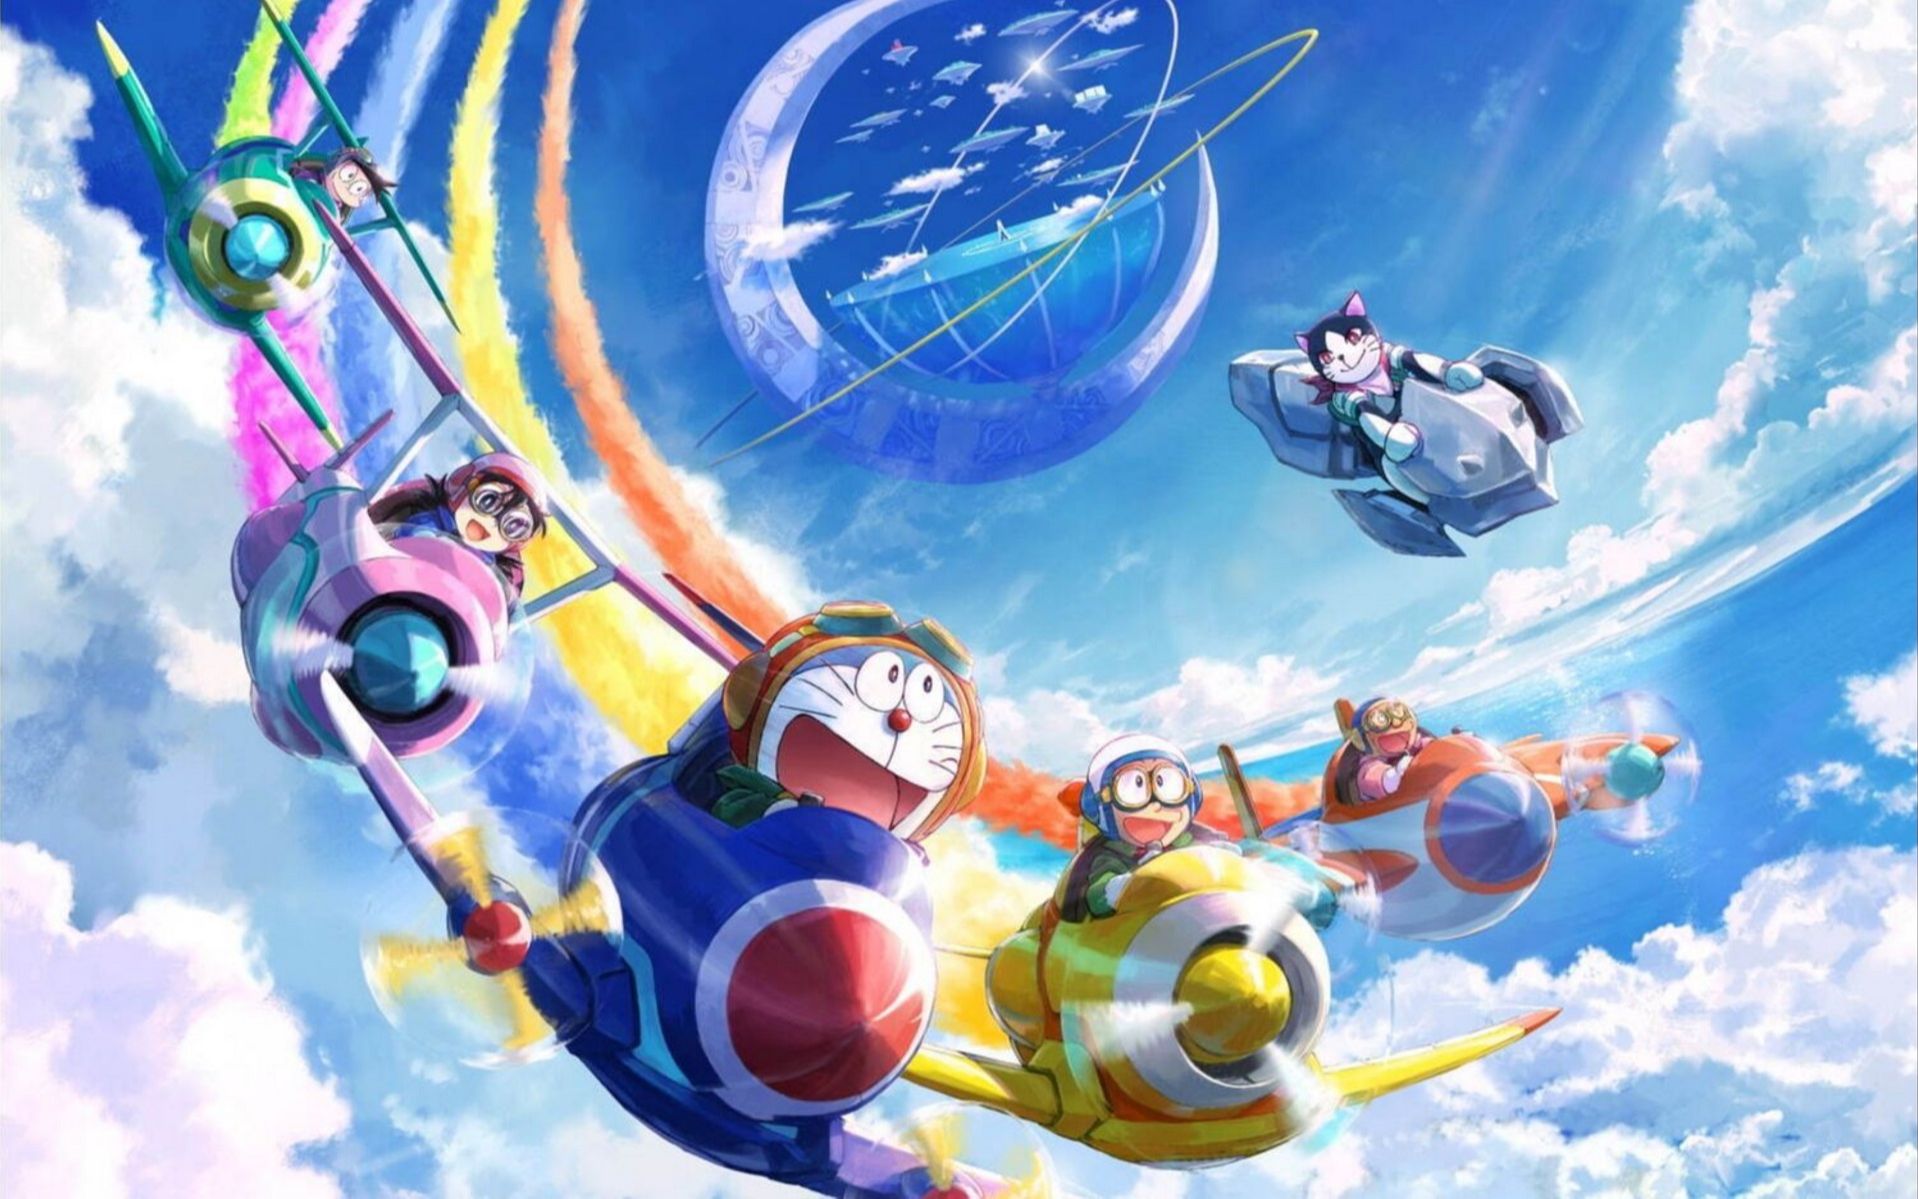 第39部剧场版《哆啦A梦》日本将映纪念人类登月50周年展开月球探险-【香蕉娱乐】